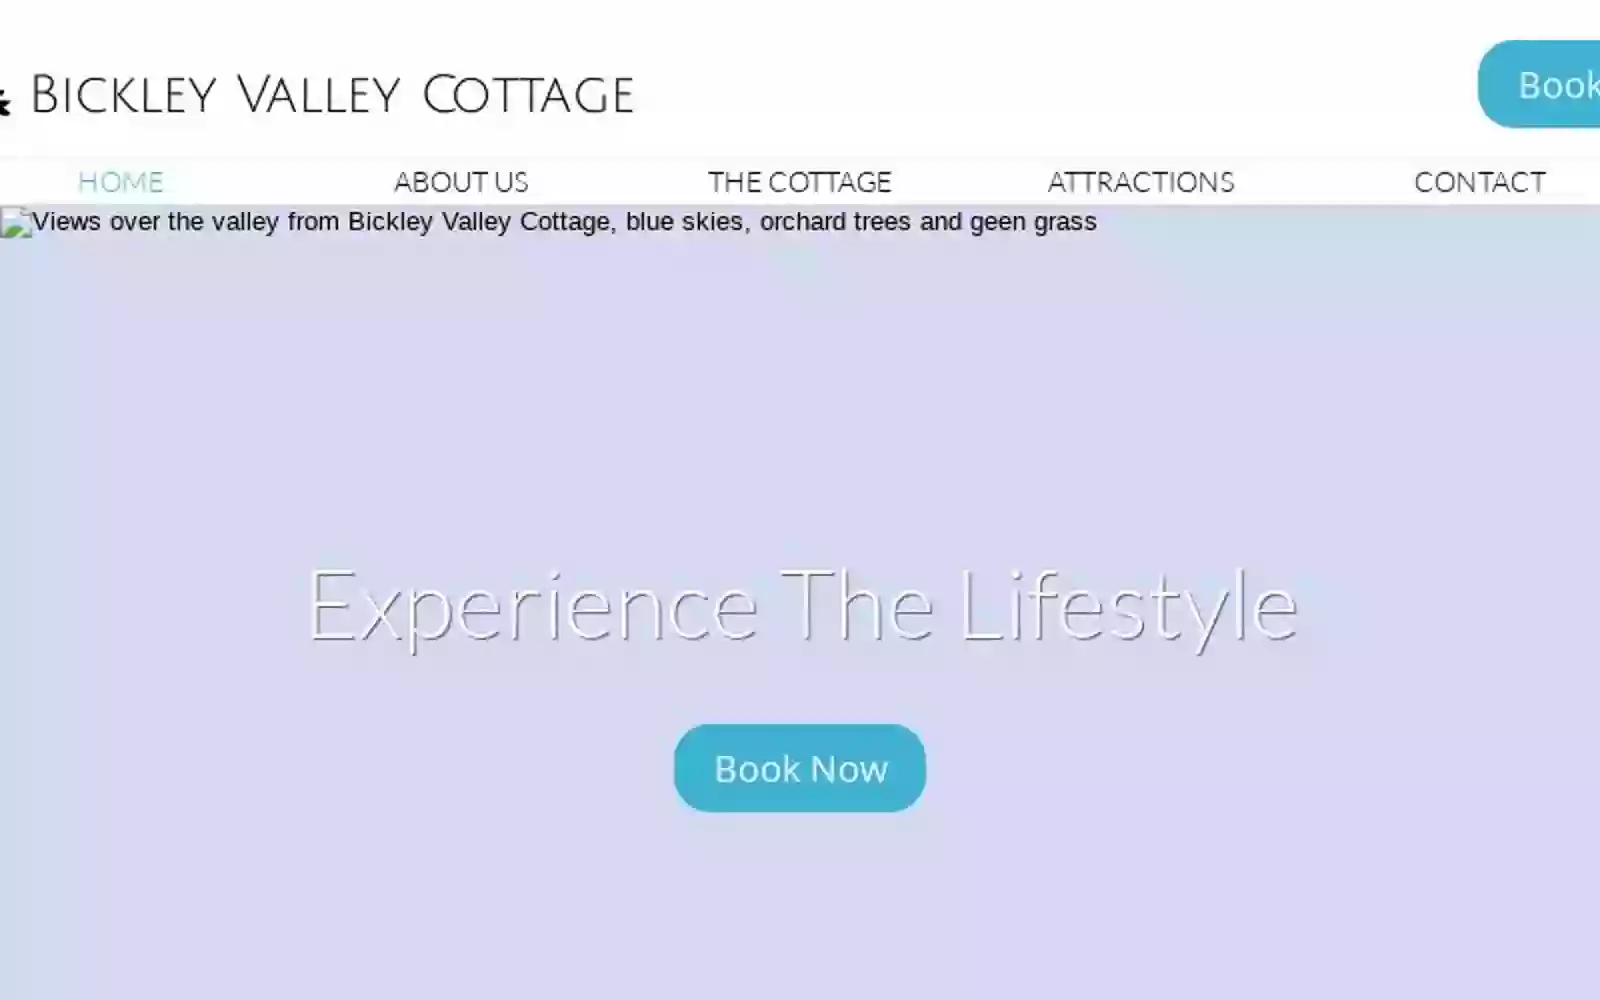 Bickley Valley Cottage